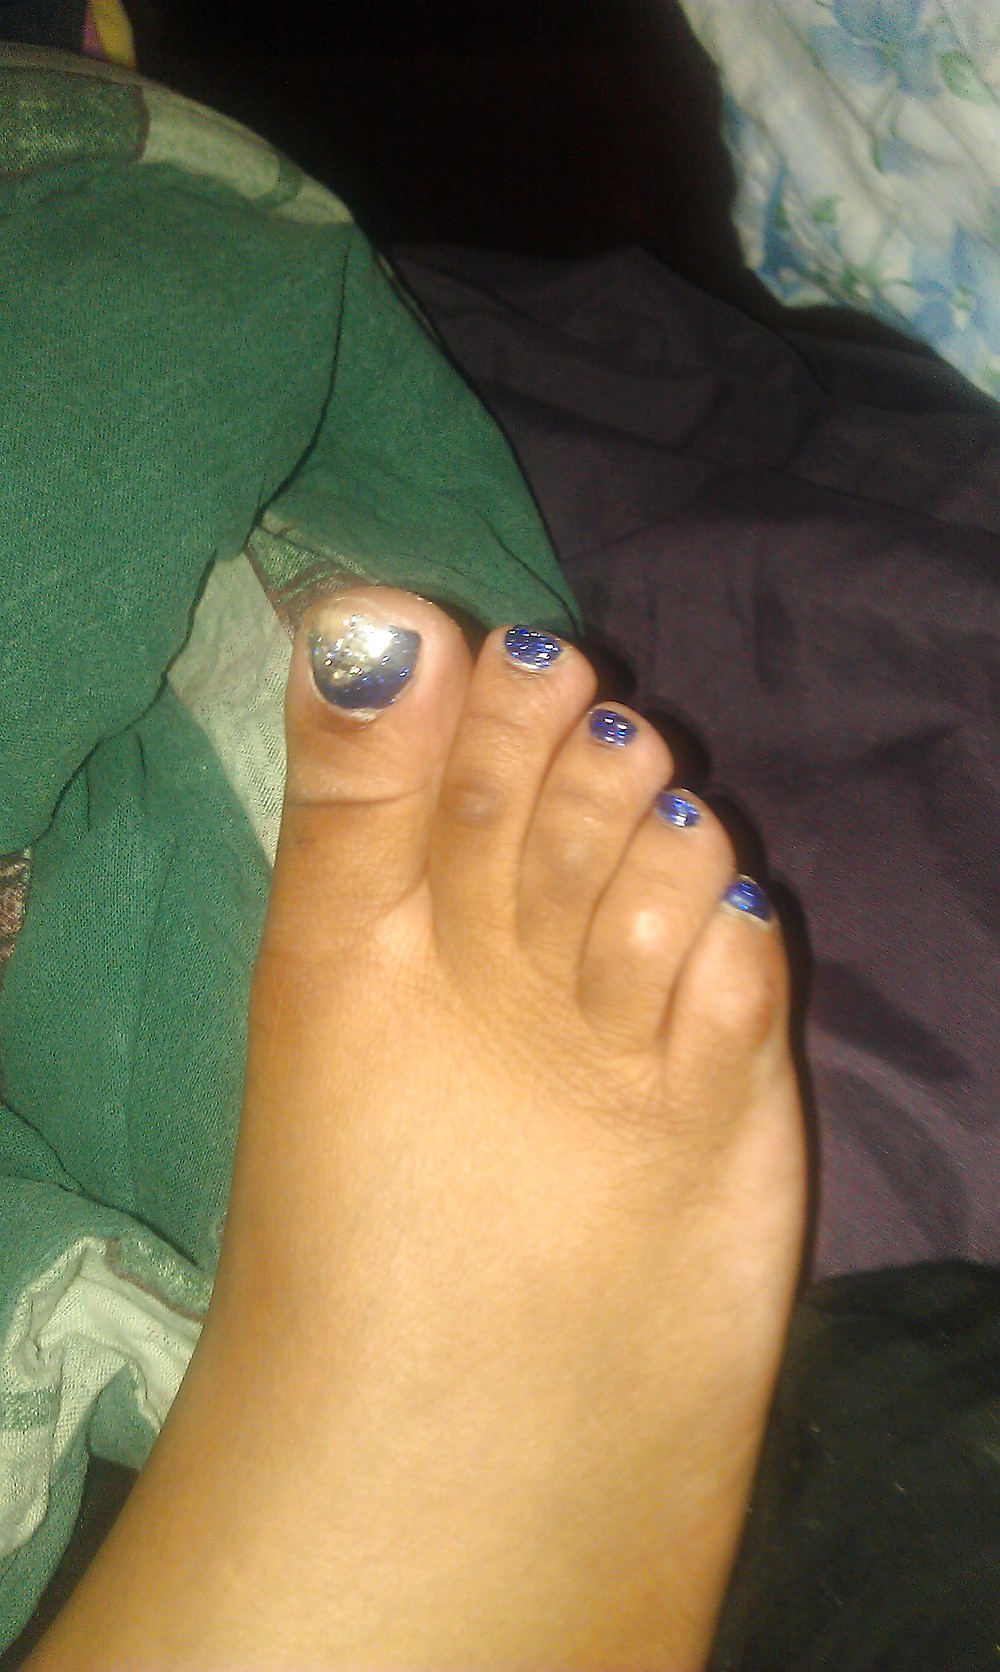 My wife cute feet & toes #4010231